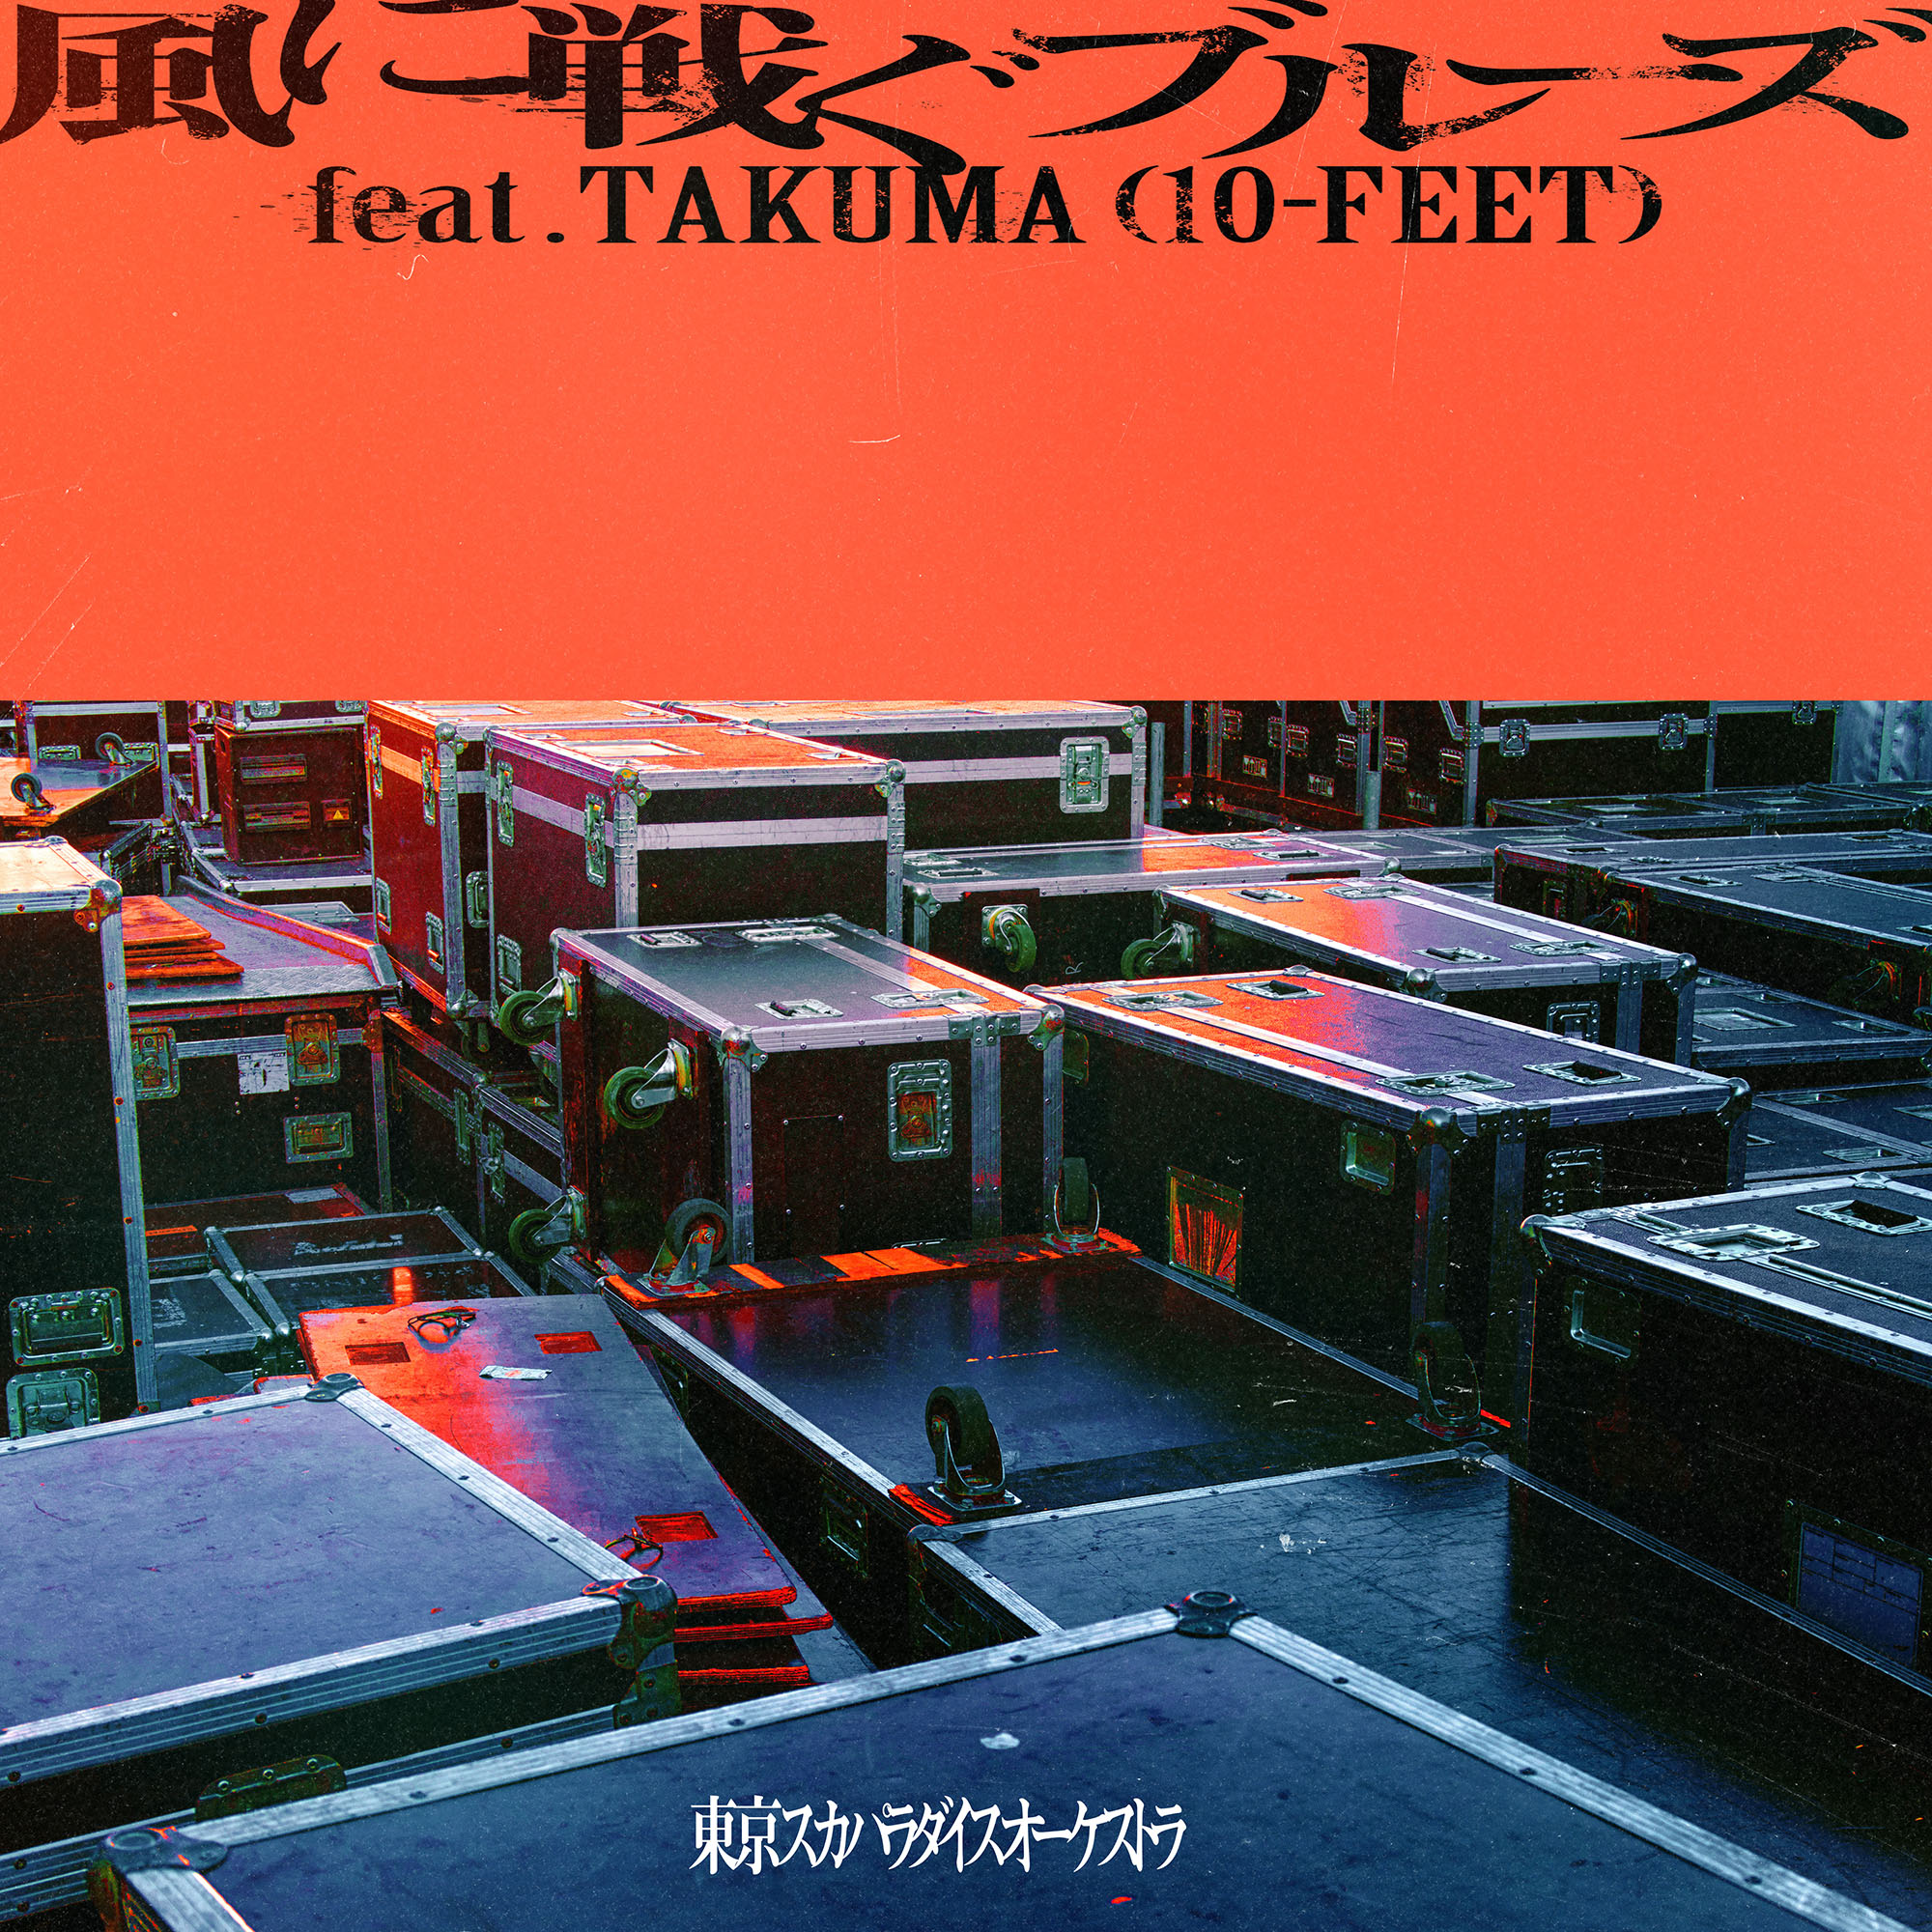 風に戦ぐブルーズ<br />
feat.TAKUMA (10-FEET)